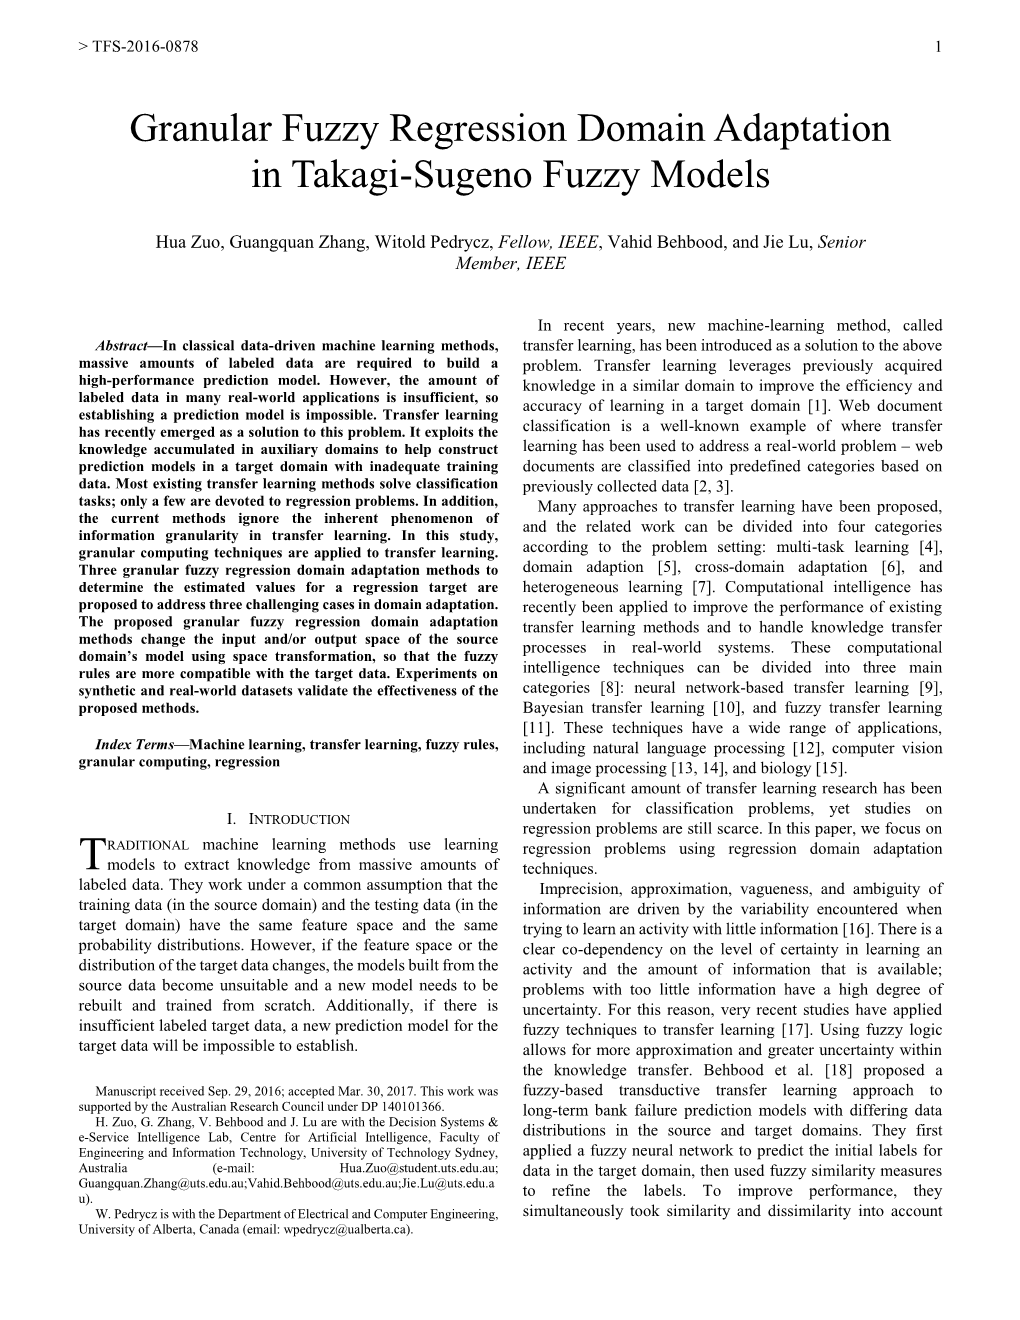 Granular Fuzzy Regression Domain Adaptation in Takagi-Sugeno Fuzzy Models